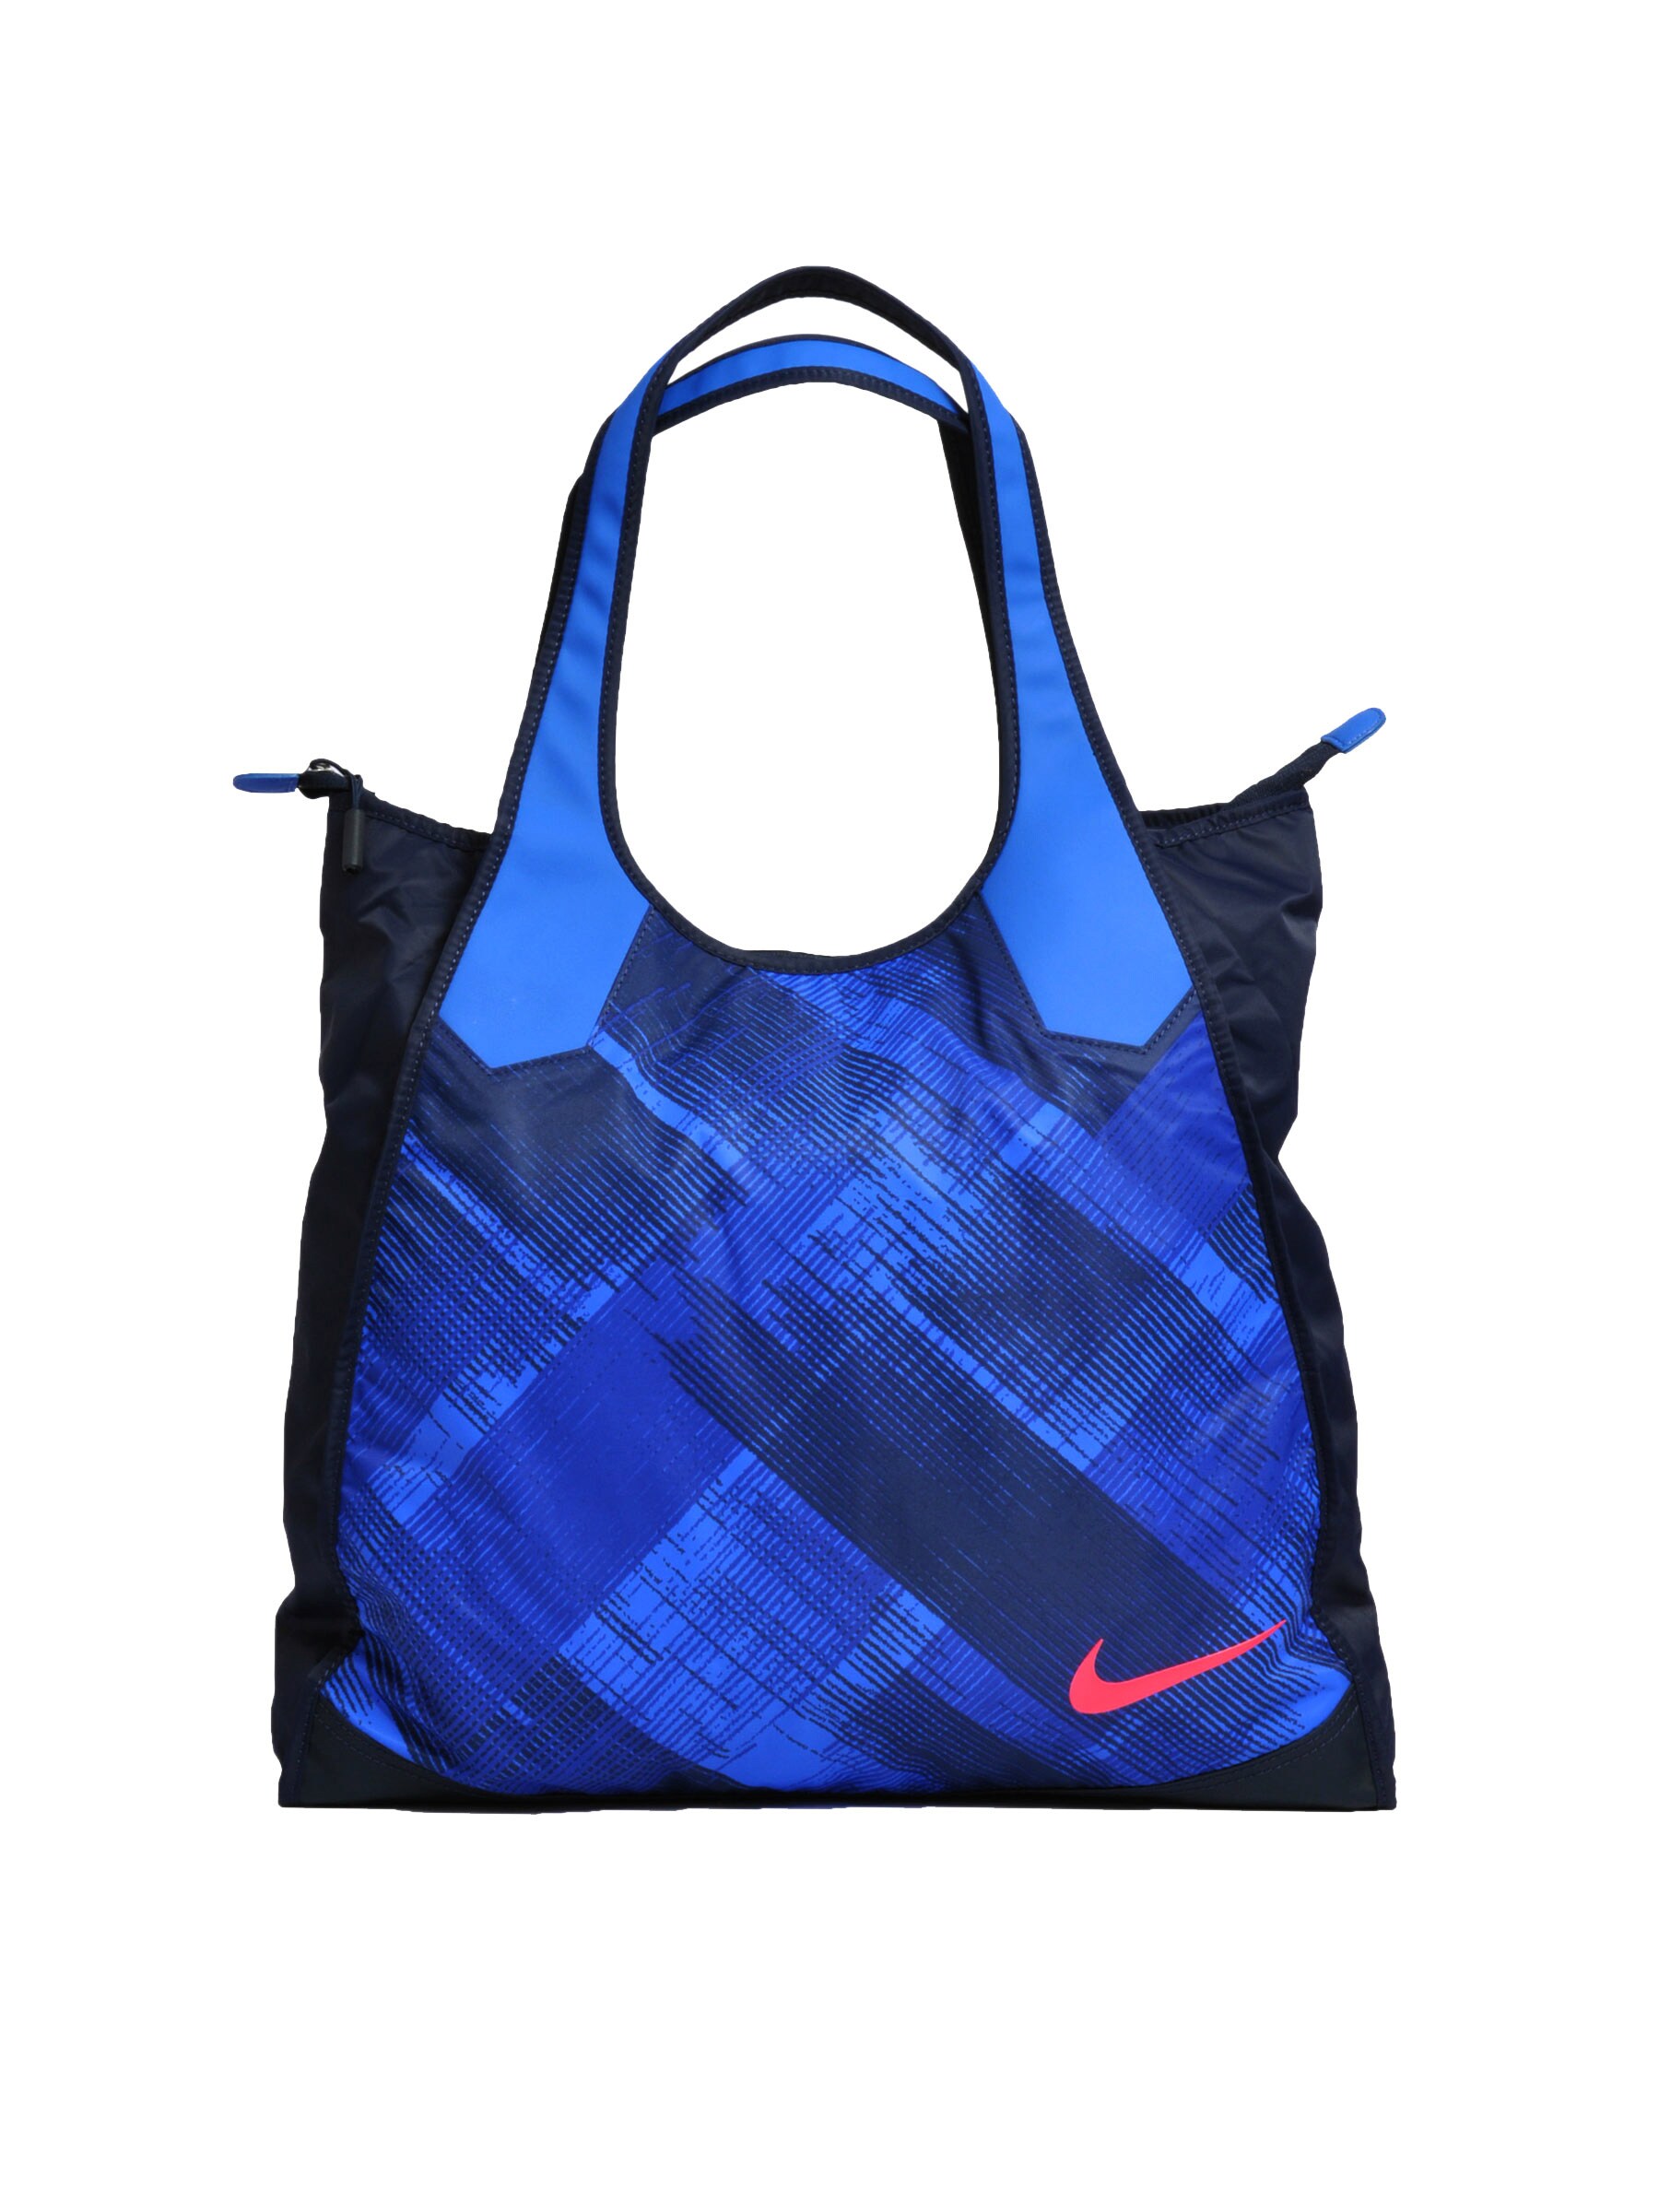 Nike Women Checks Blue Handbags